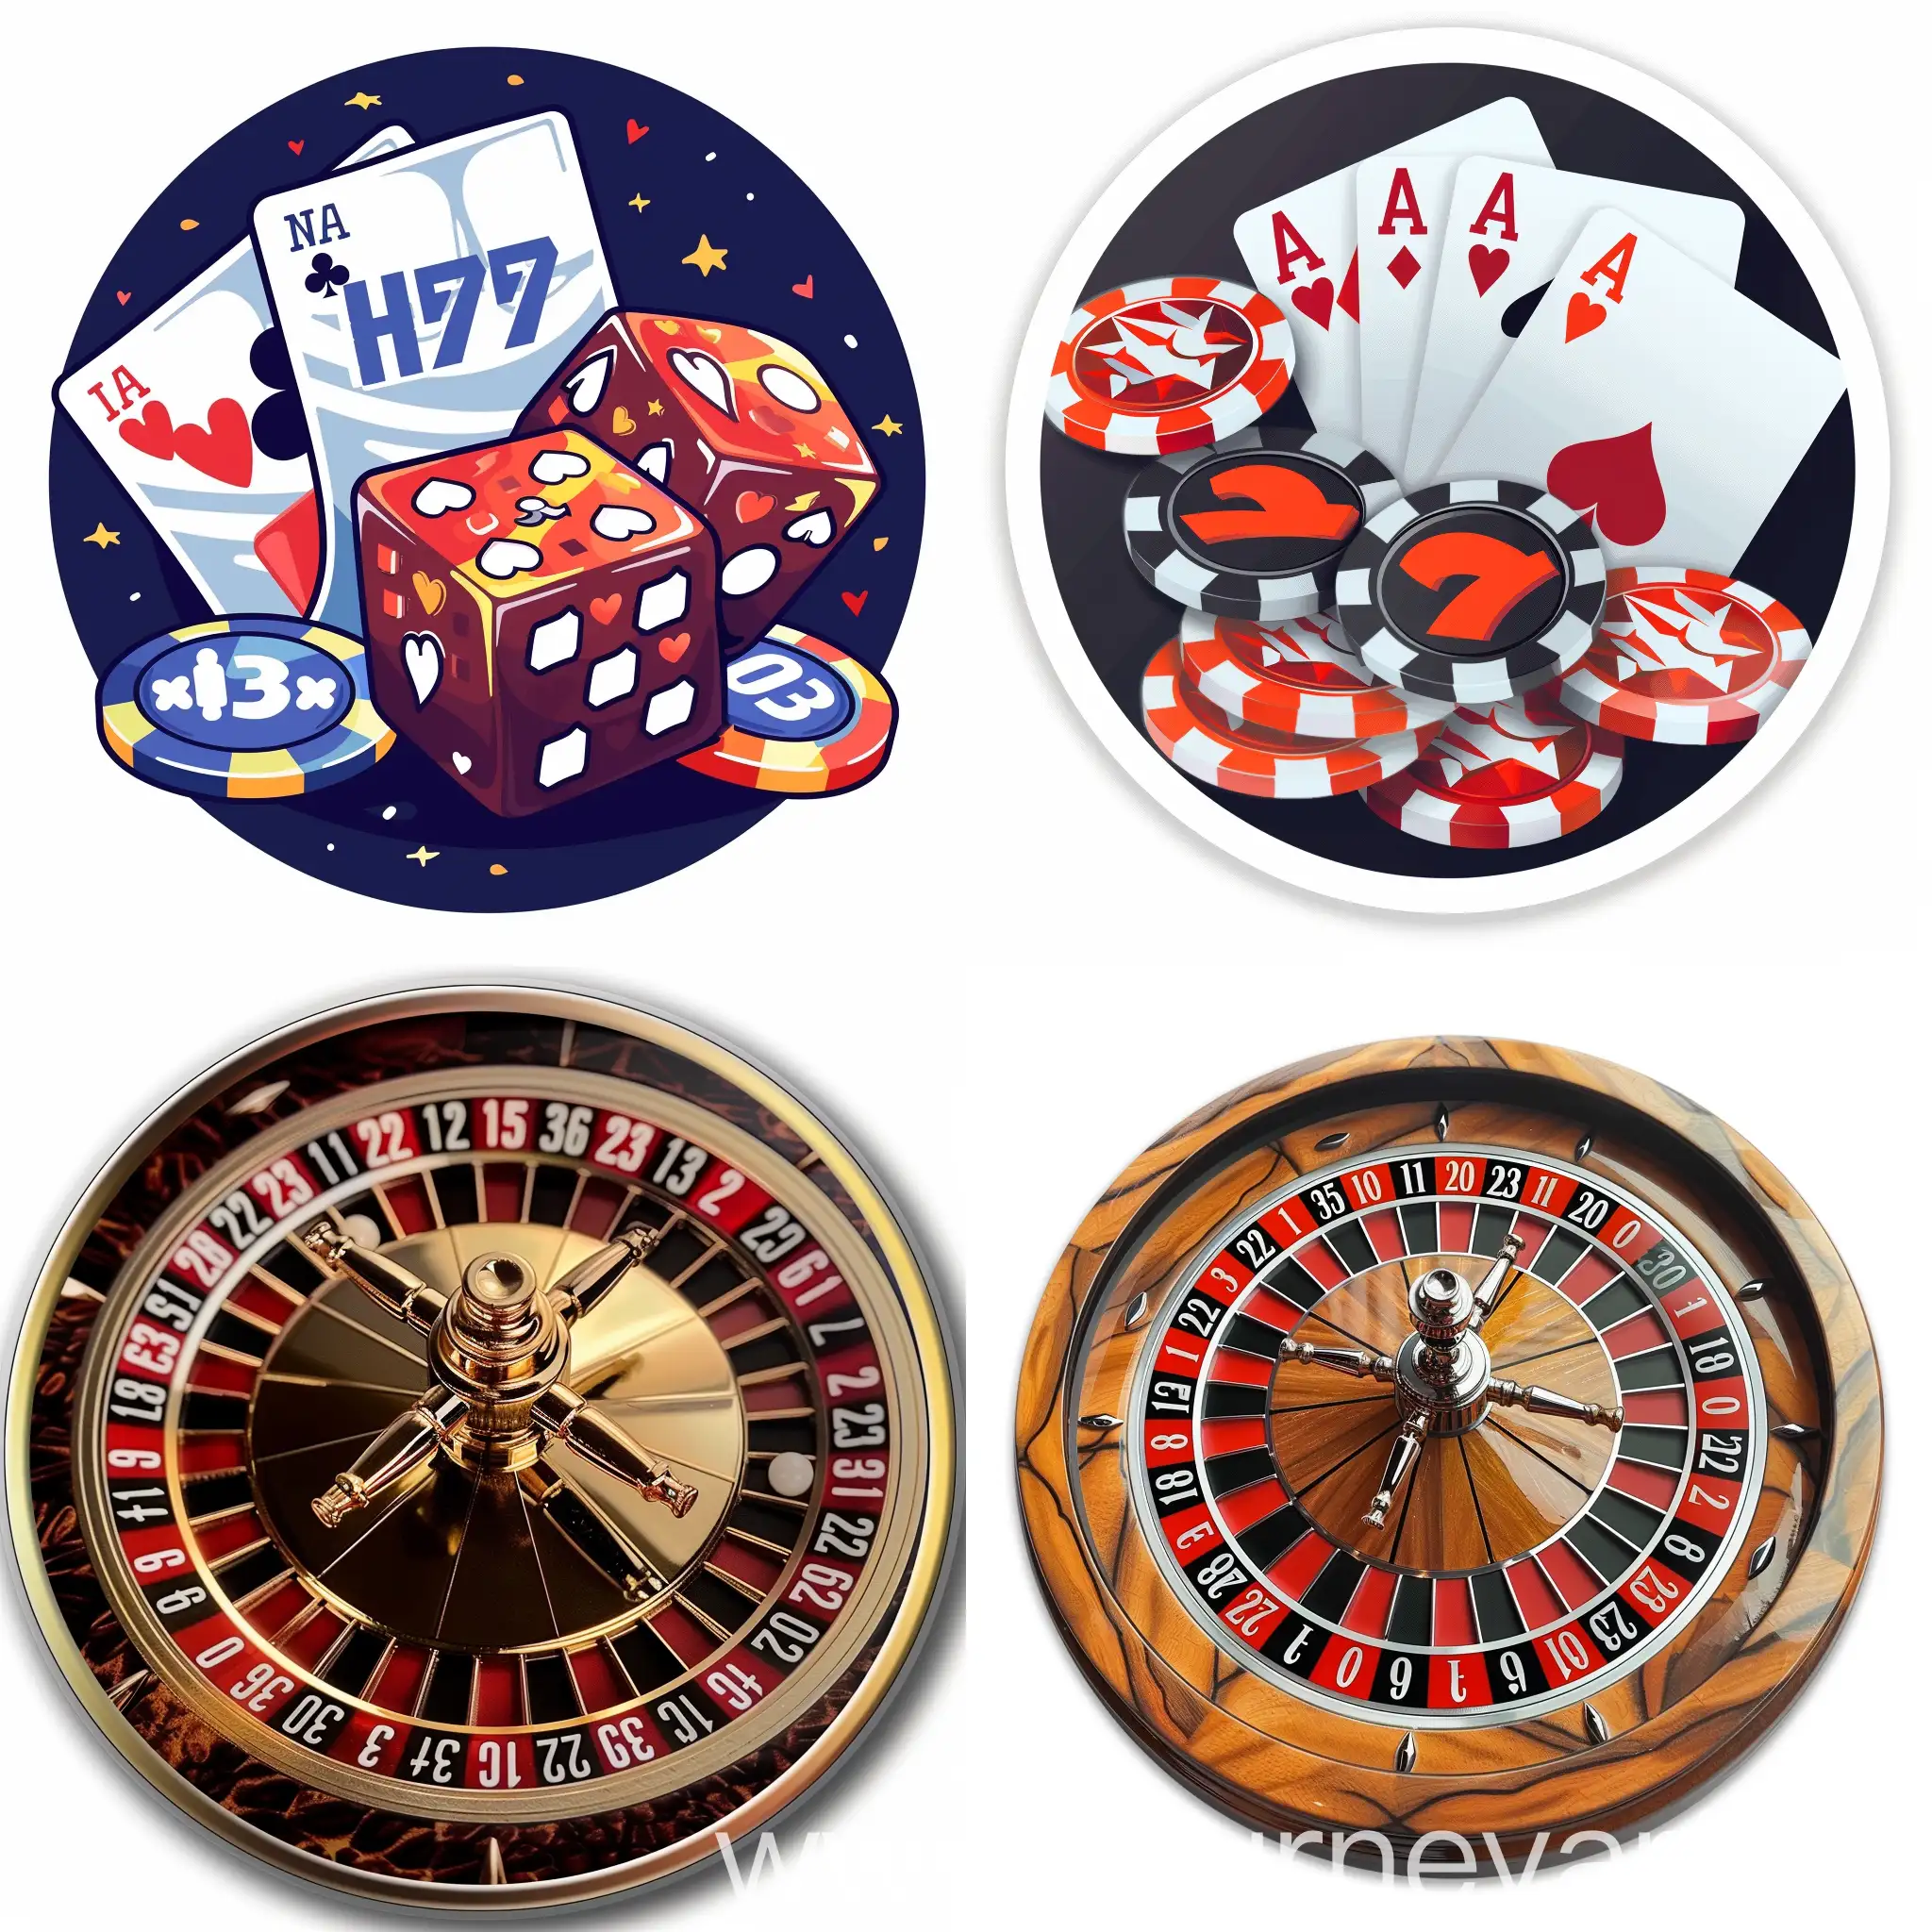 Whimsical-NezaHF-Gambling-Logo-in-Circular-Design